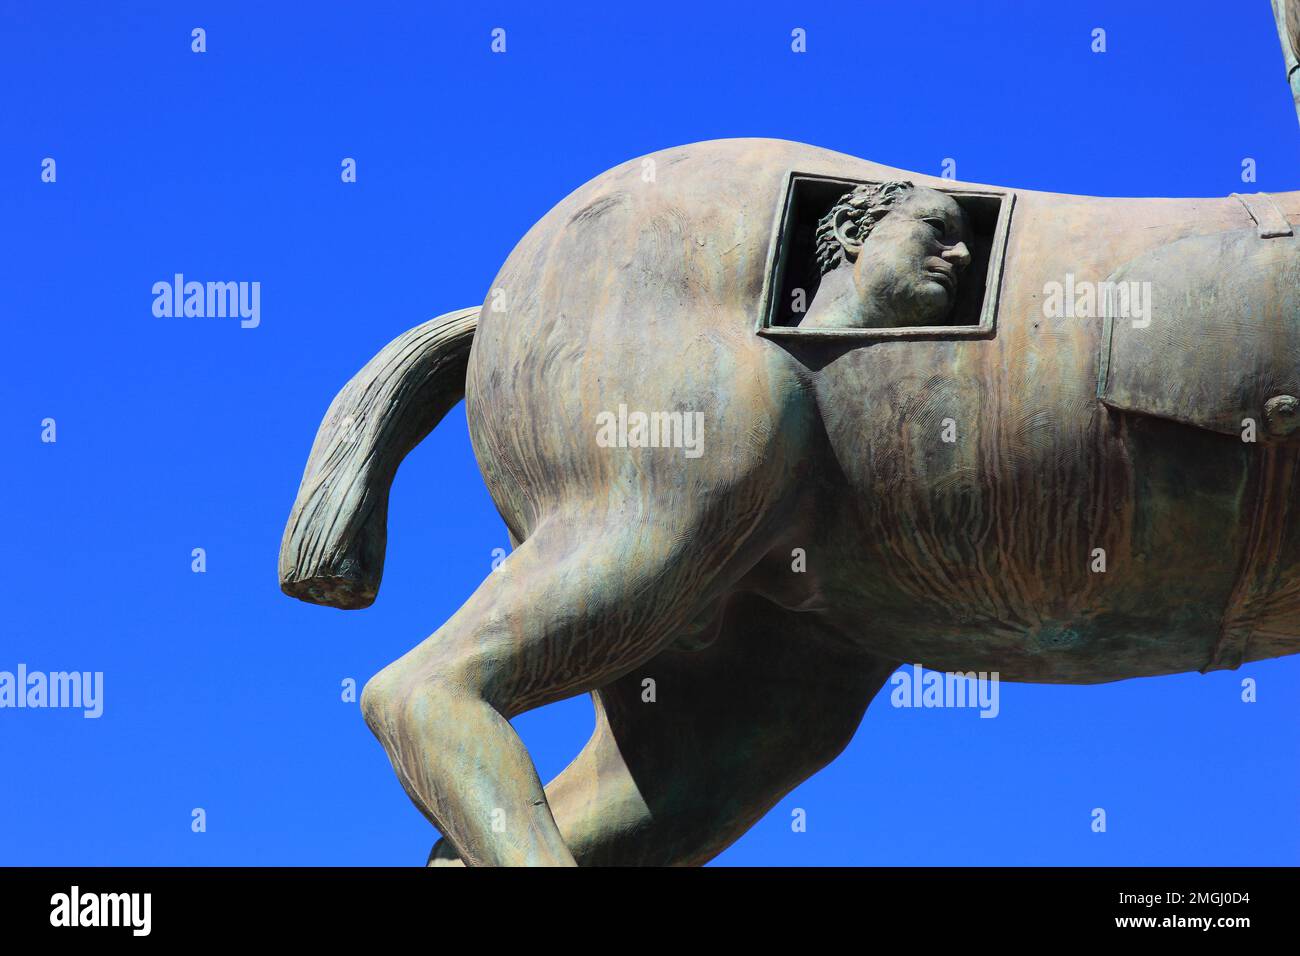 Statua von Centaur auf dem Gebiet des Forum, Kentaur, Mischwesen der griechischen Mythologie aus Pferd und Mensch, Pompeji, Antike Stadt in Kampanien Foto Stock